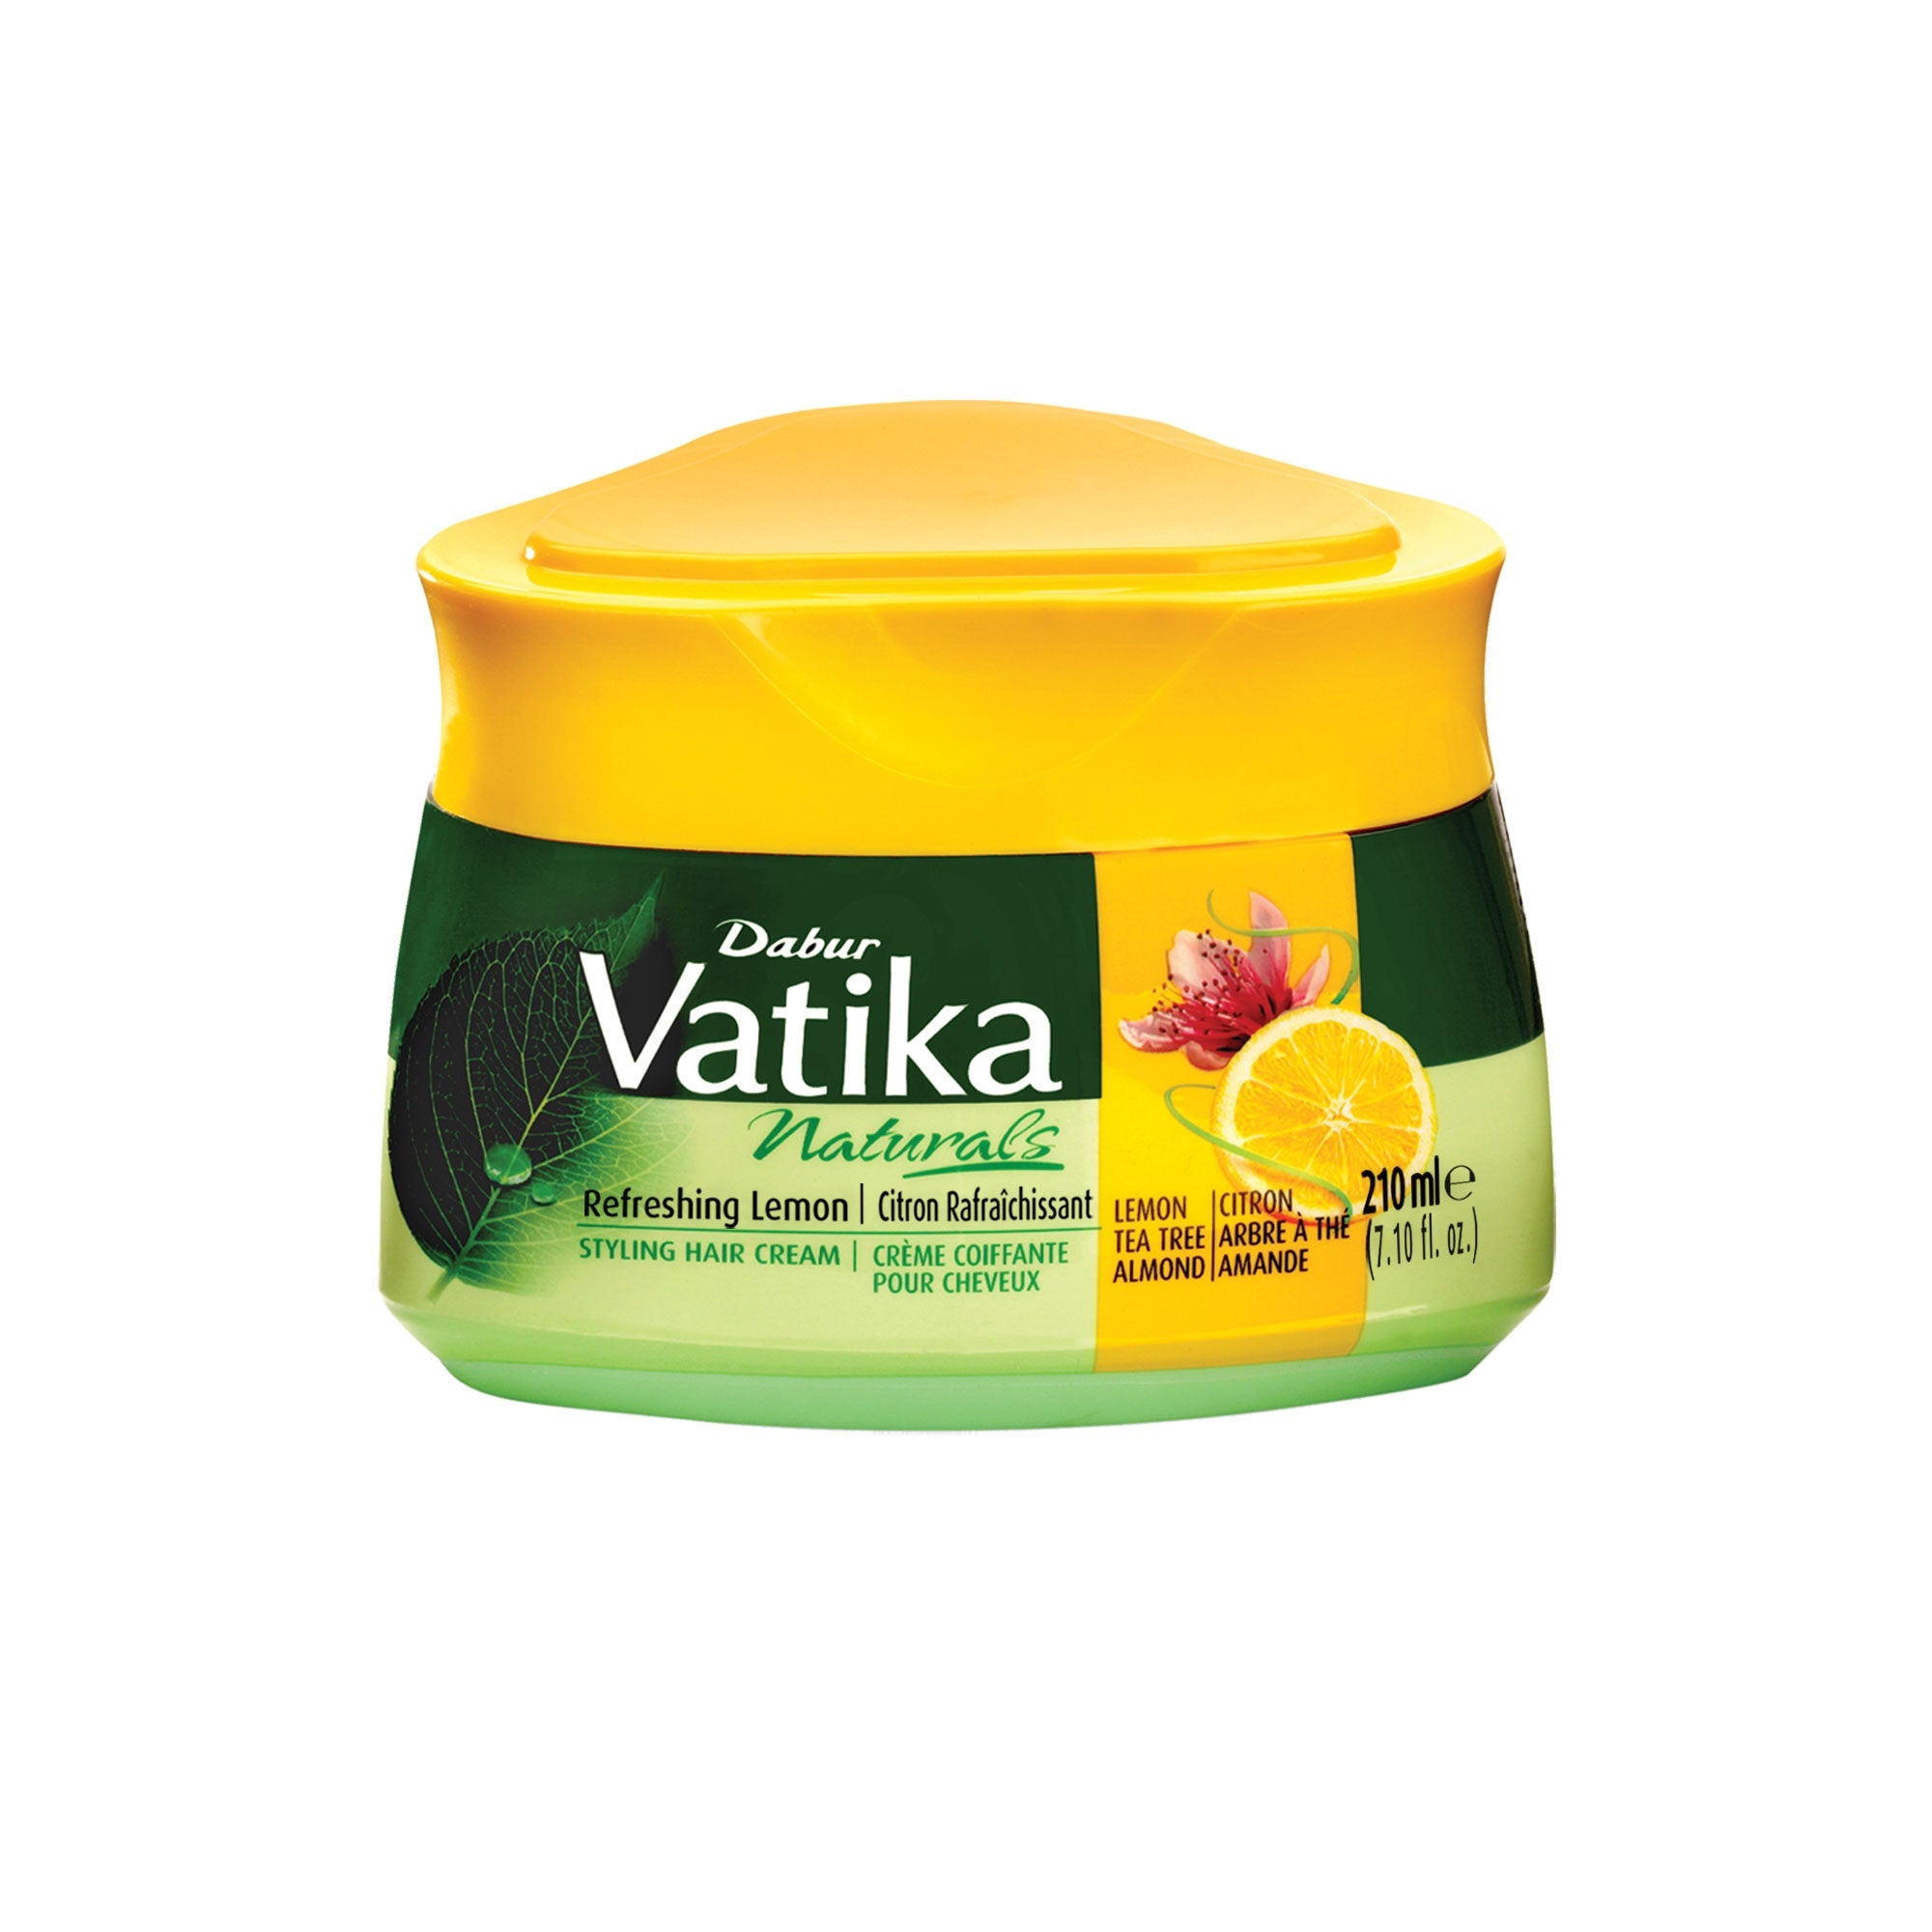 Vatika Naturals Refreshing Lemon Styling Hair cream.